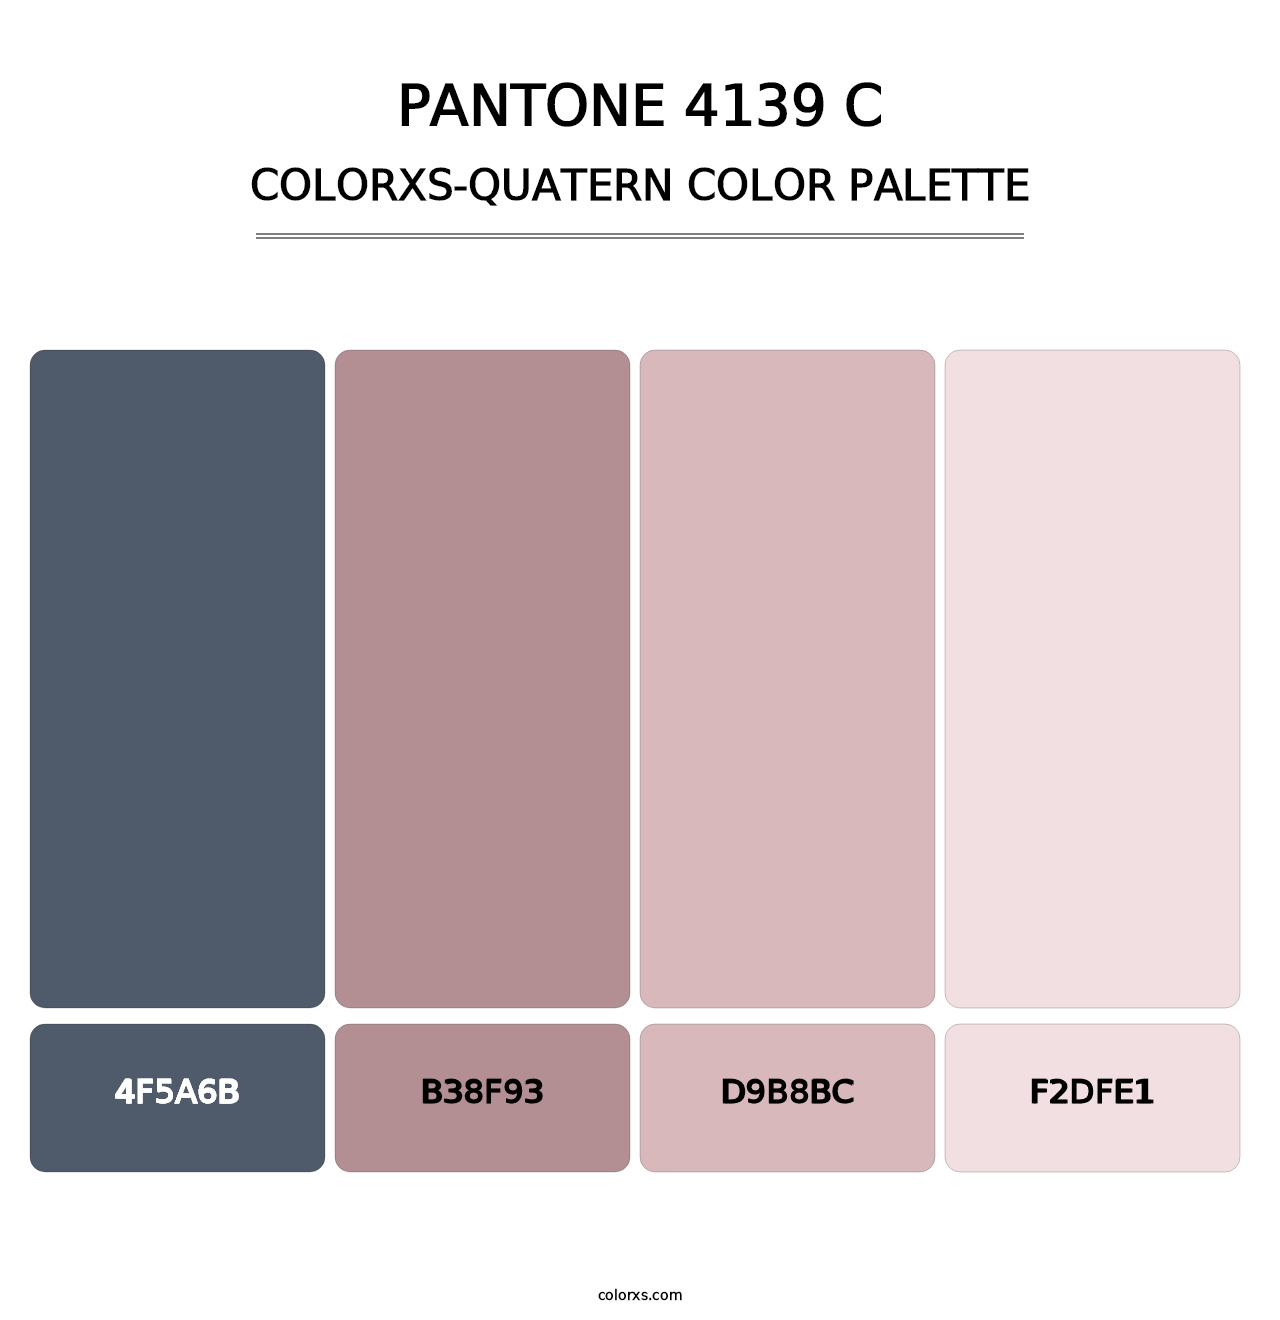 PANTONE 4139 C - Colorxs Quatern Palette